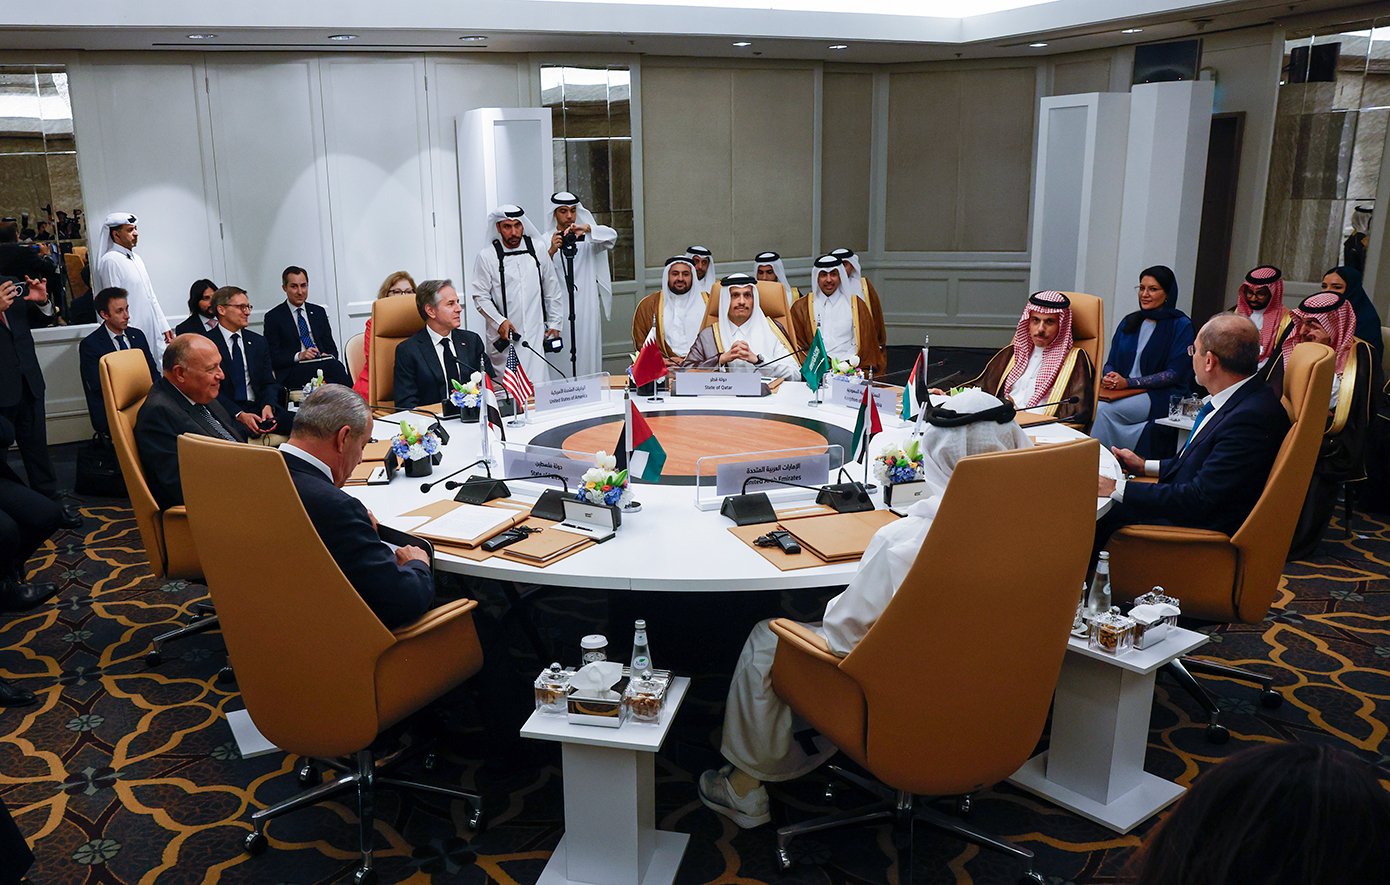 Οι ΗΠΑ είναι έτοιμες να δώσουν εγγυήσεις ασφαλείας στη Σαουδική Αραβία αν προσεγγίσει το Ισραήλ